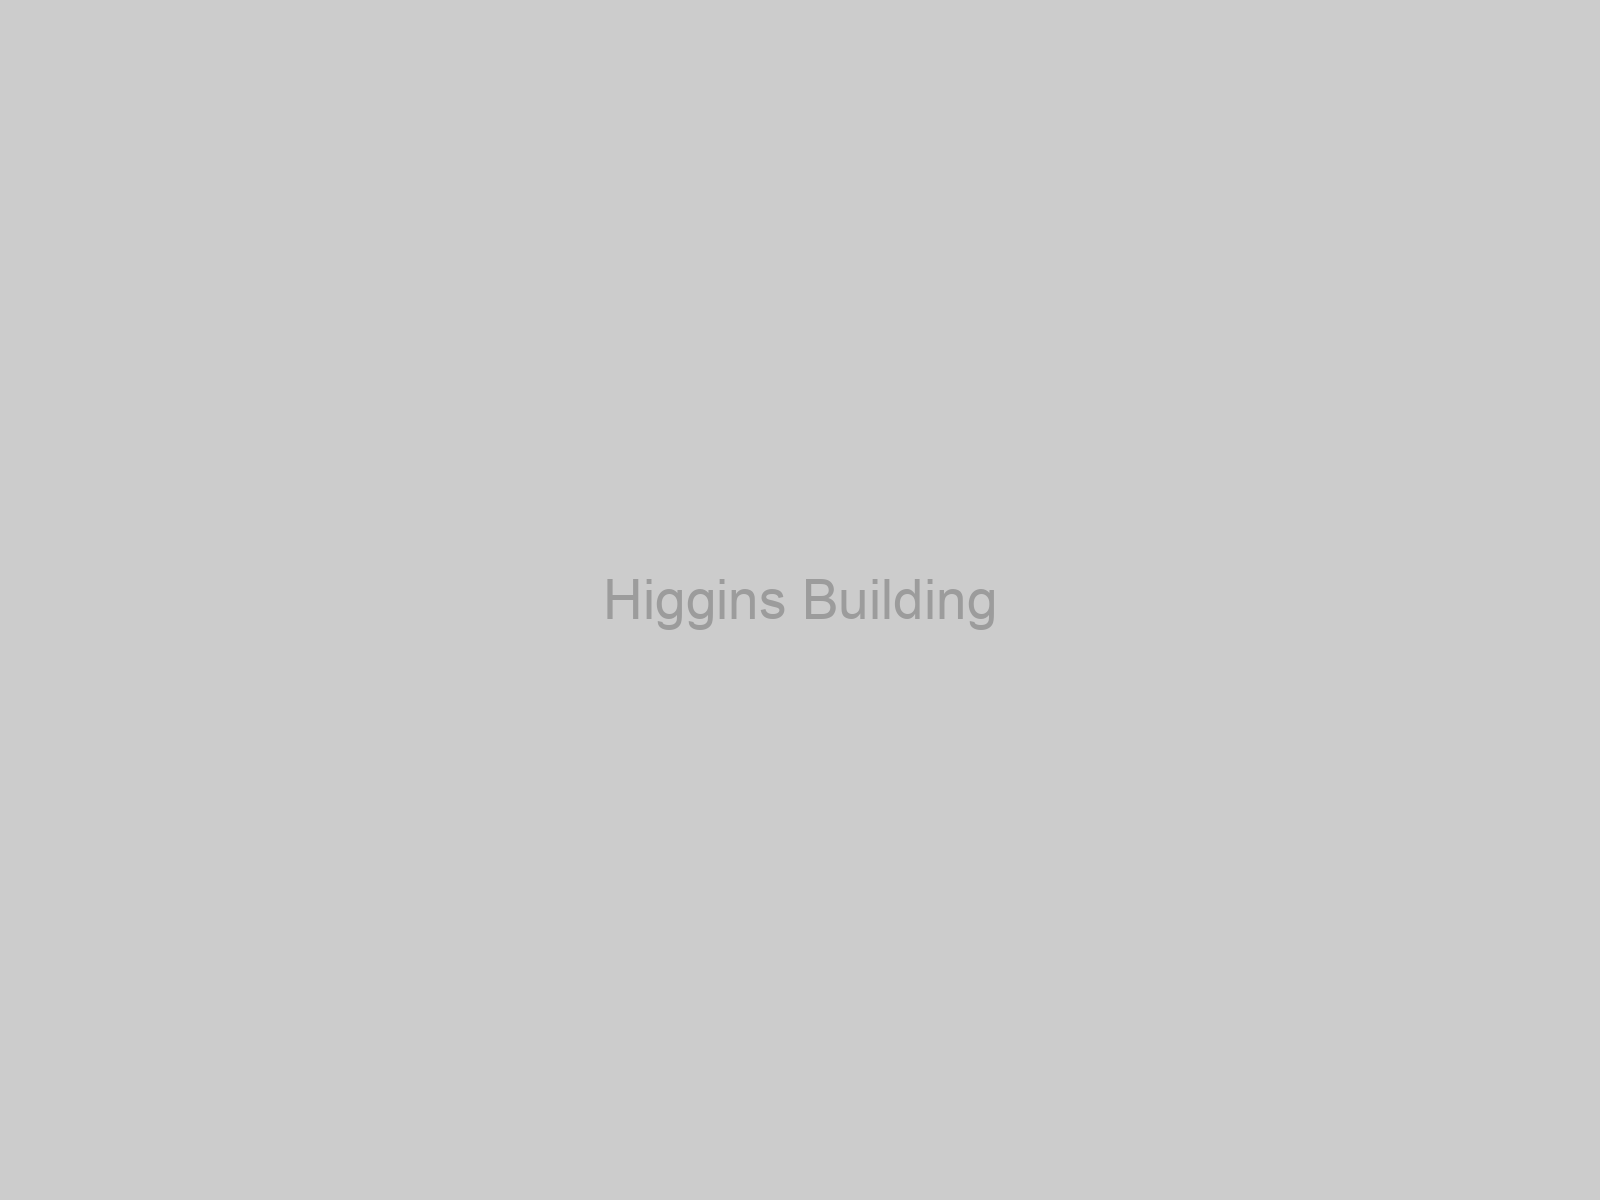 Higgins Building